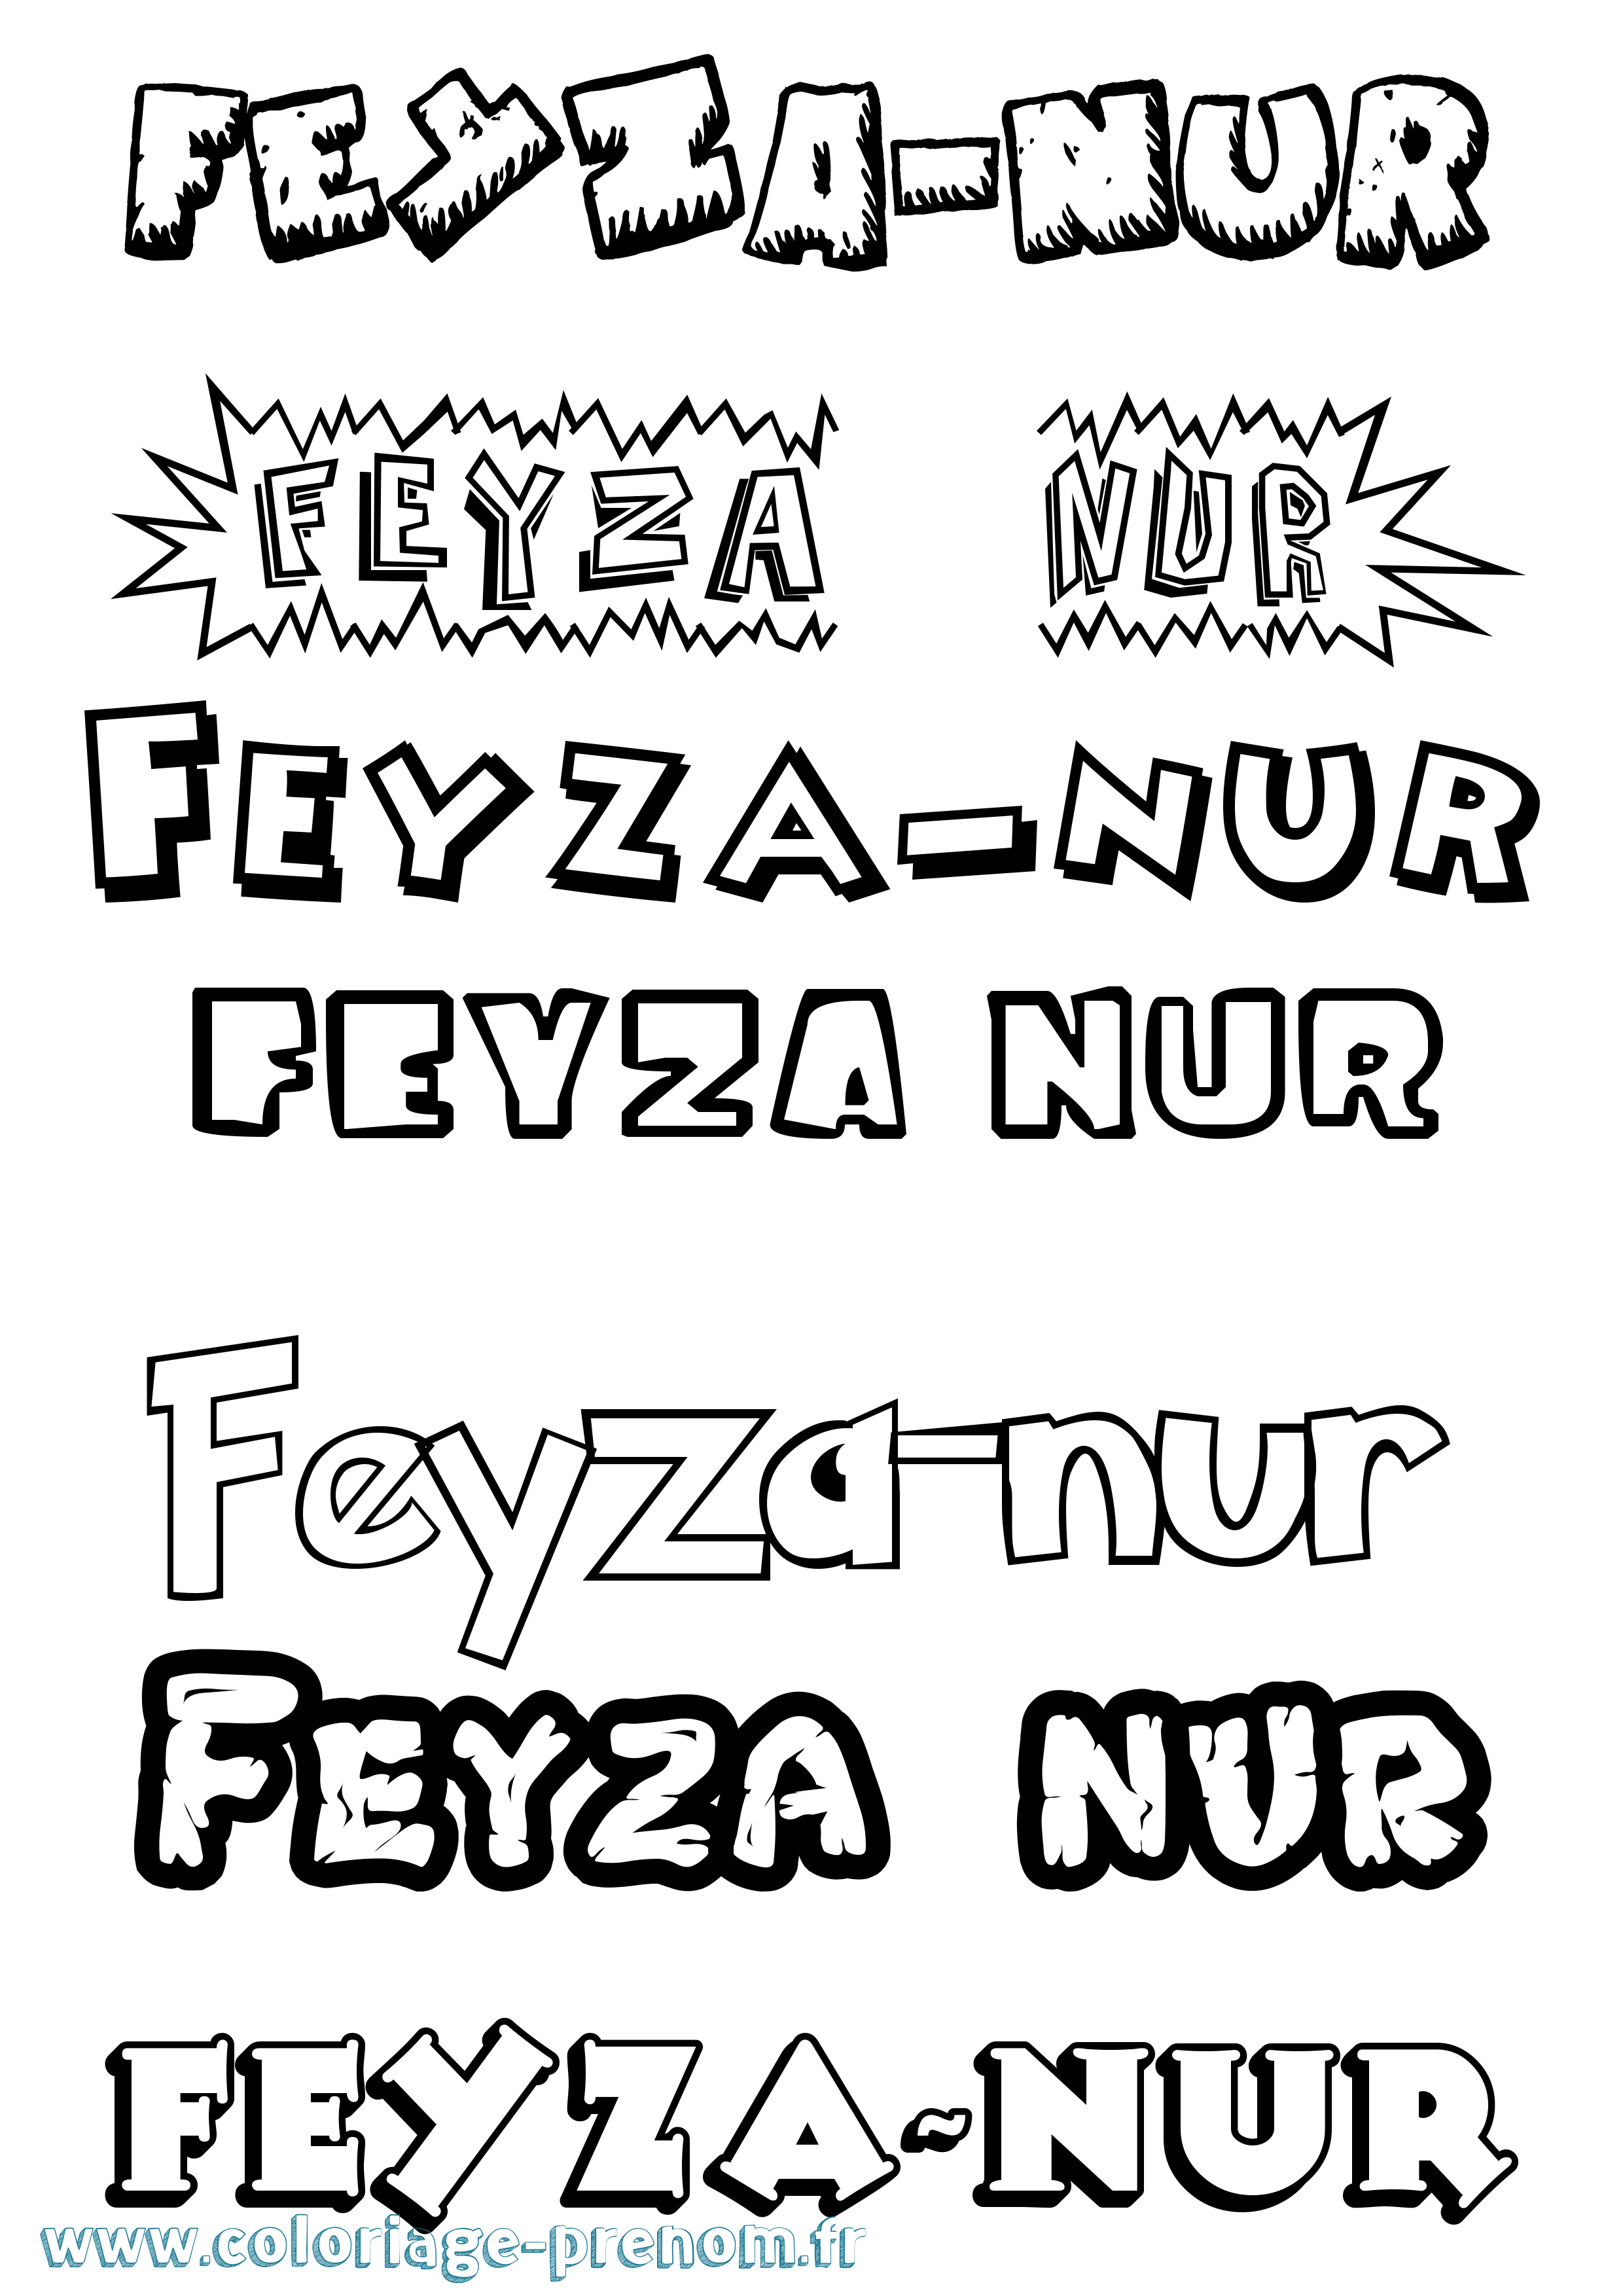 Coloriage prénom Feyza-Nur Dessin Animé